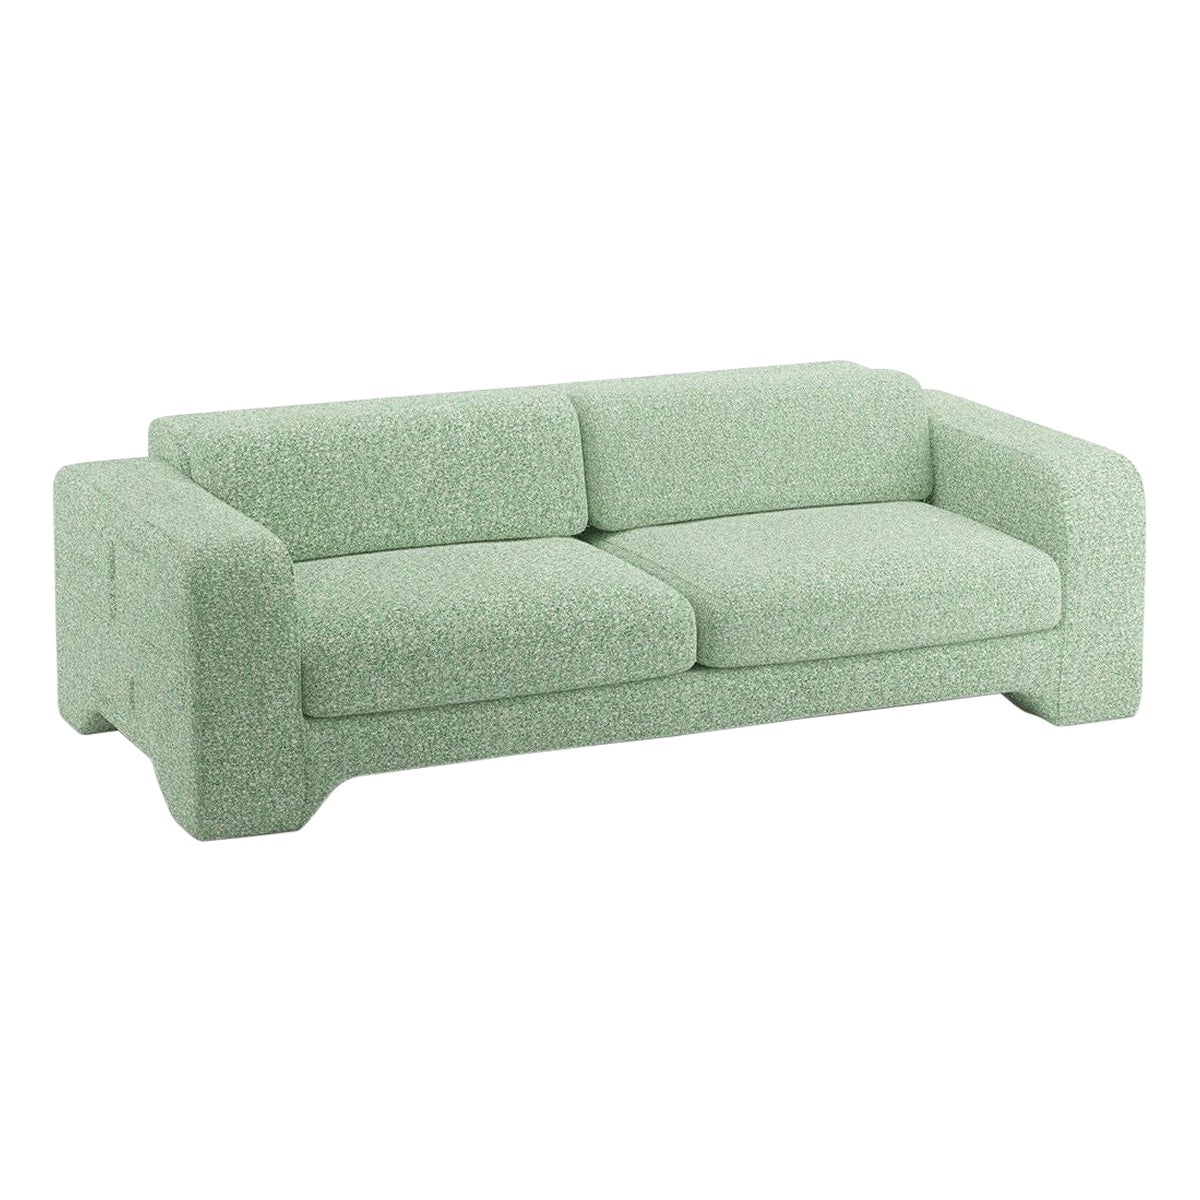 Popus Editions Giovanna 4 Seater Sofa in Grass Zanzi Linen Fabric